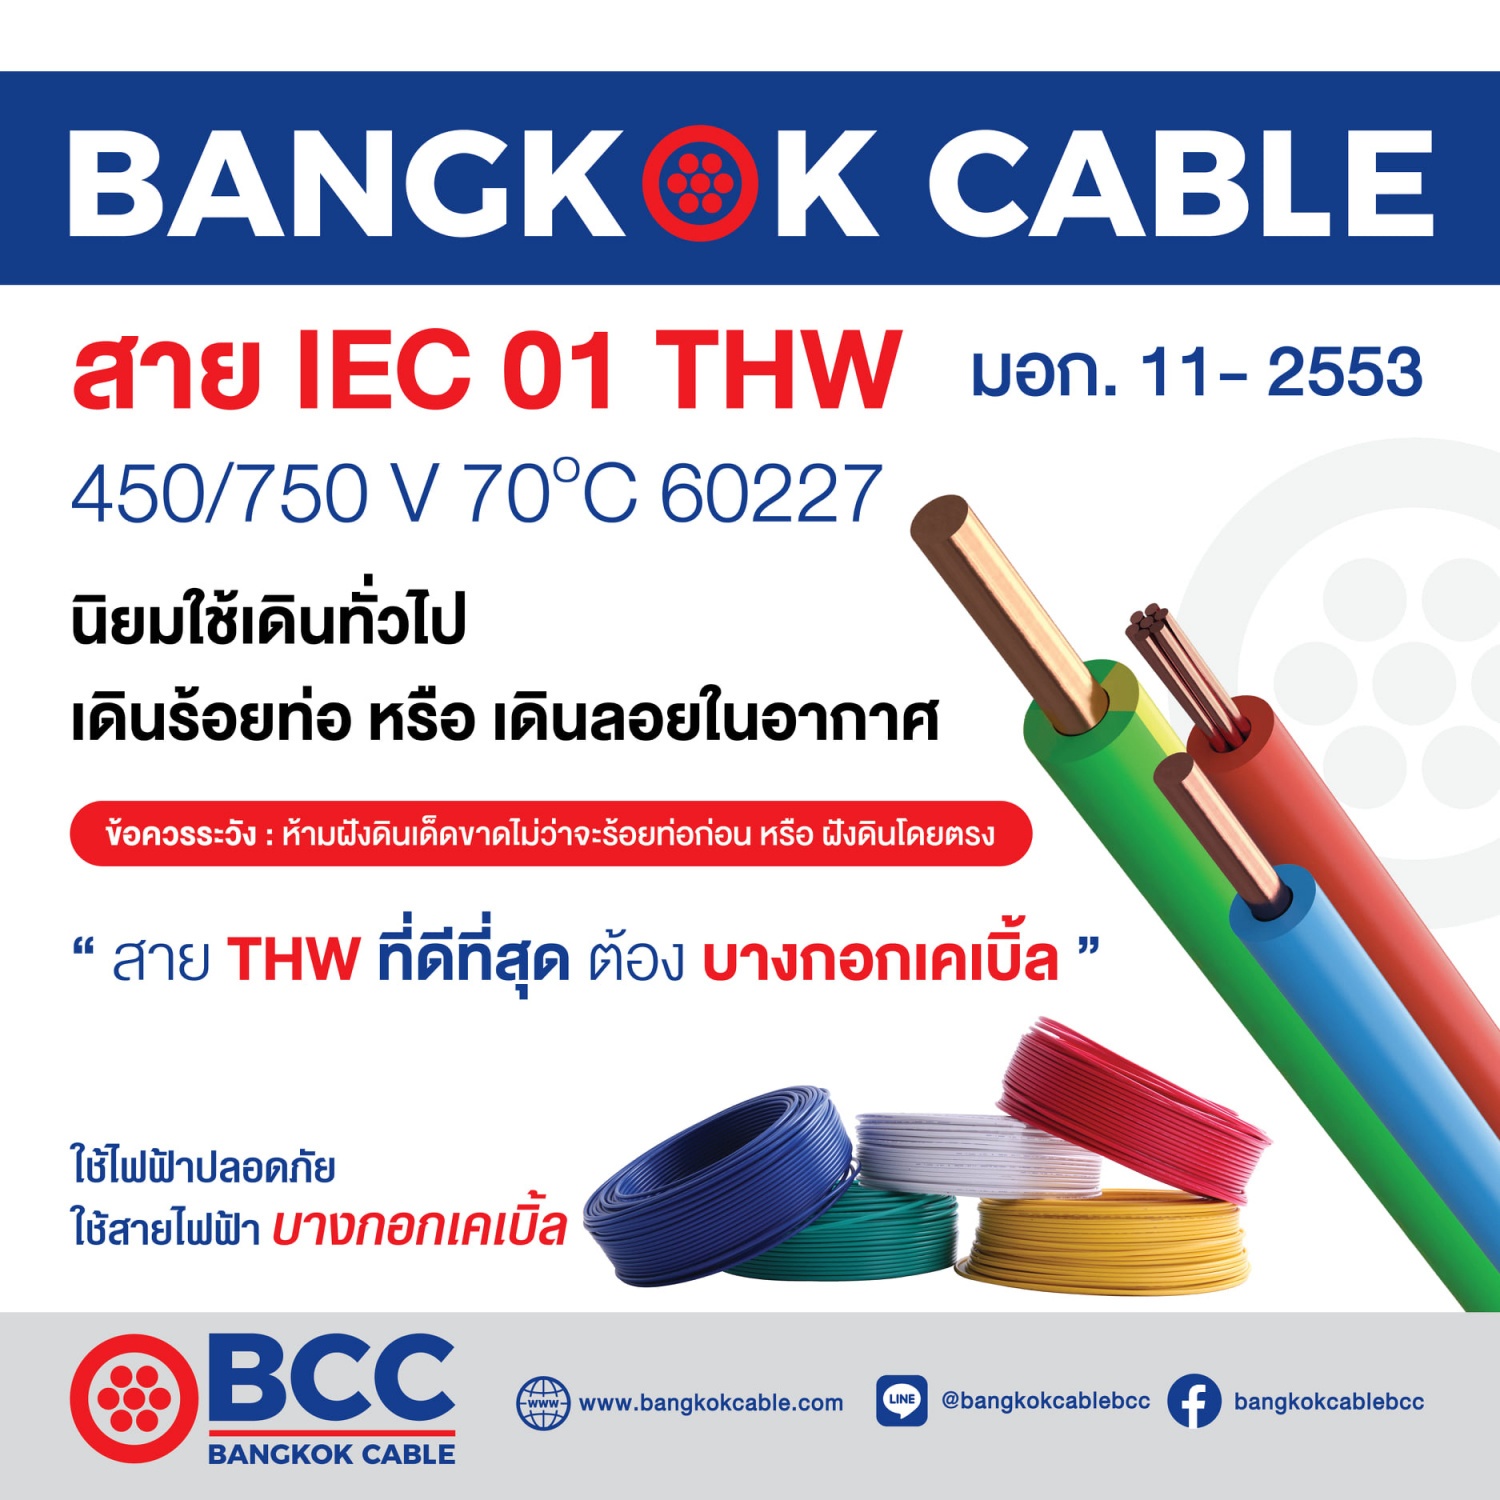 BCC สายไฟ IEC01 THW 1x1.5 SQ.MM. 30ม. สีแดง